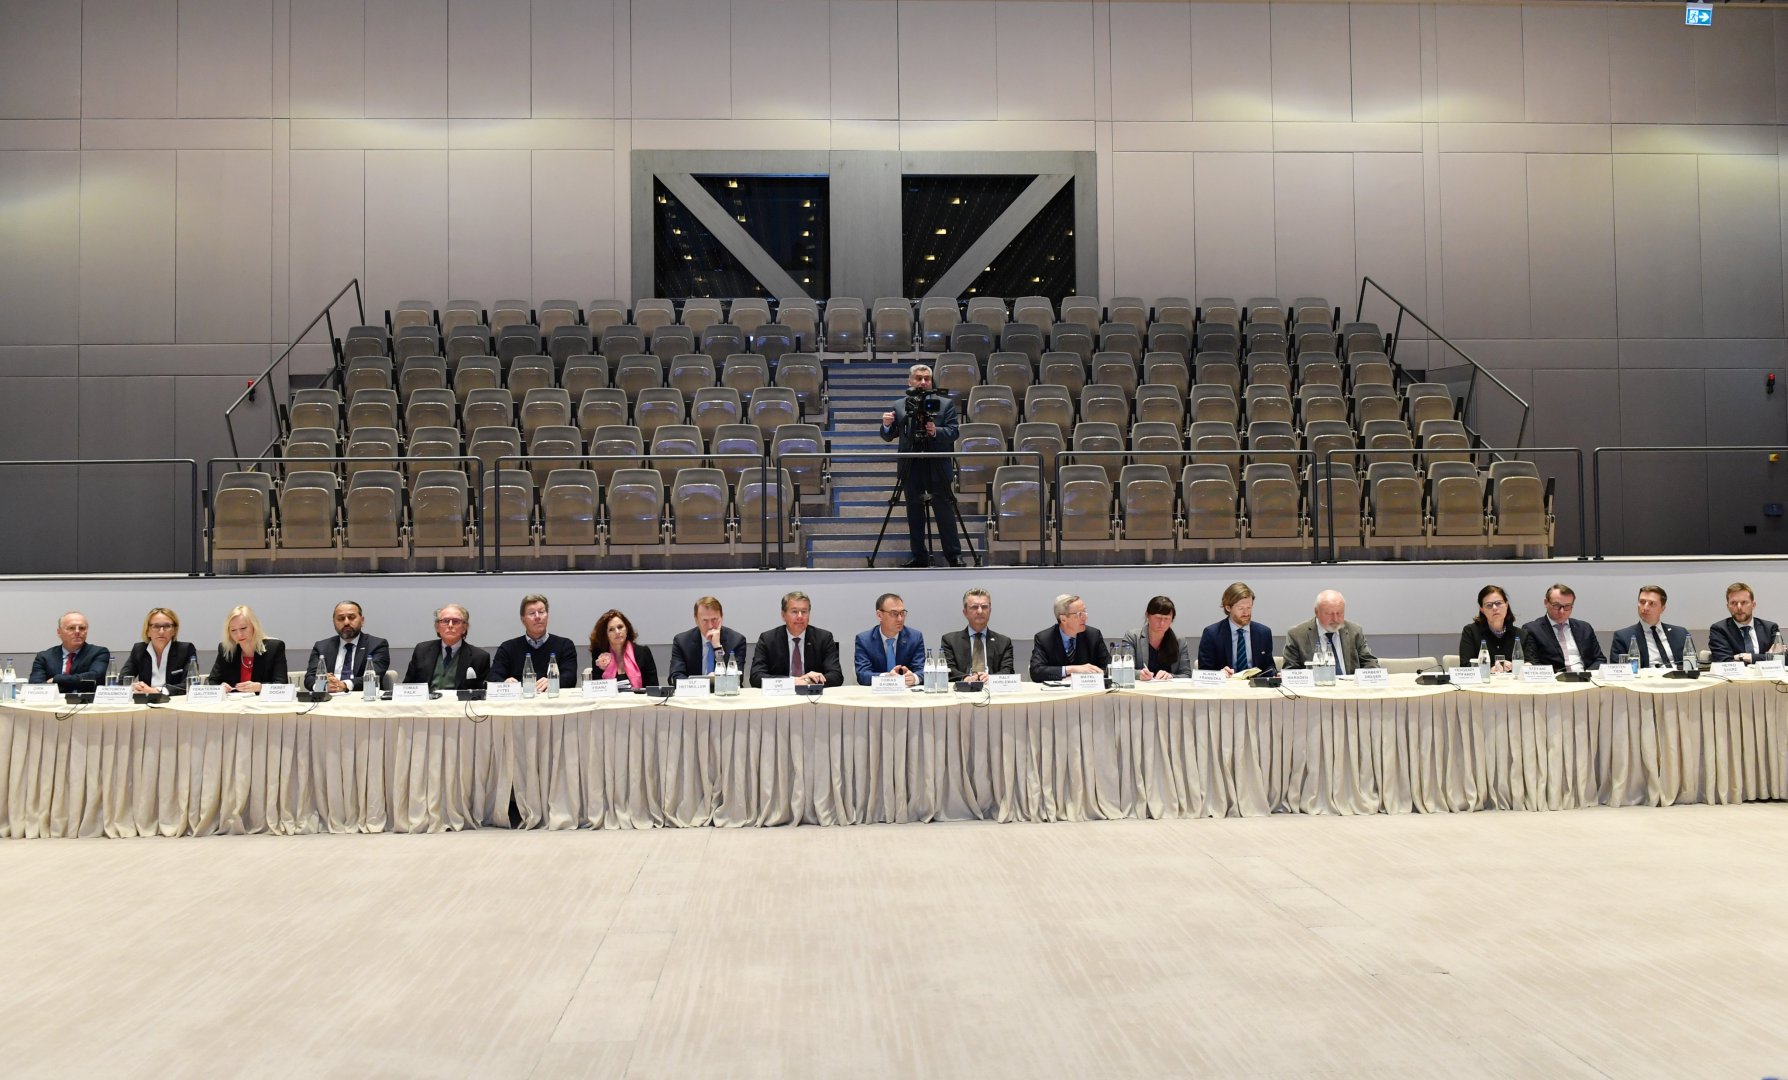 Азербайджан и Германия обсудили реализацию совместных проектов (ФОТО)